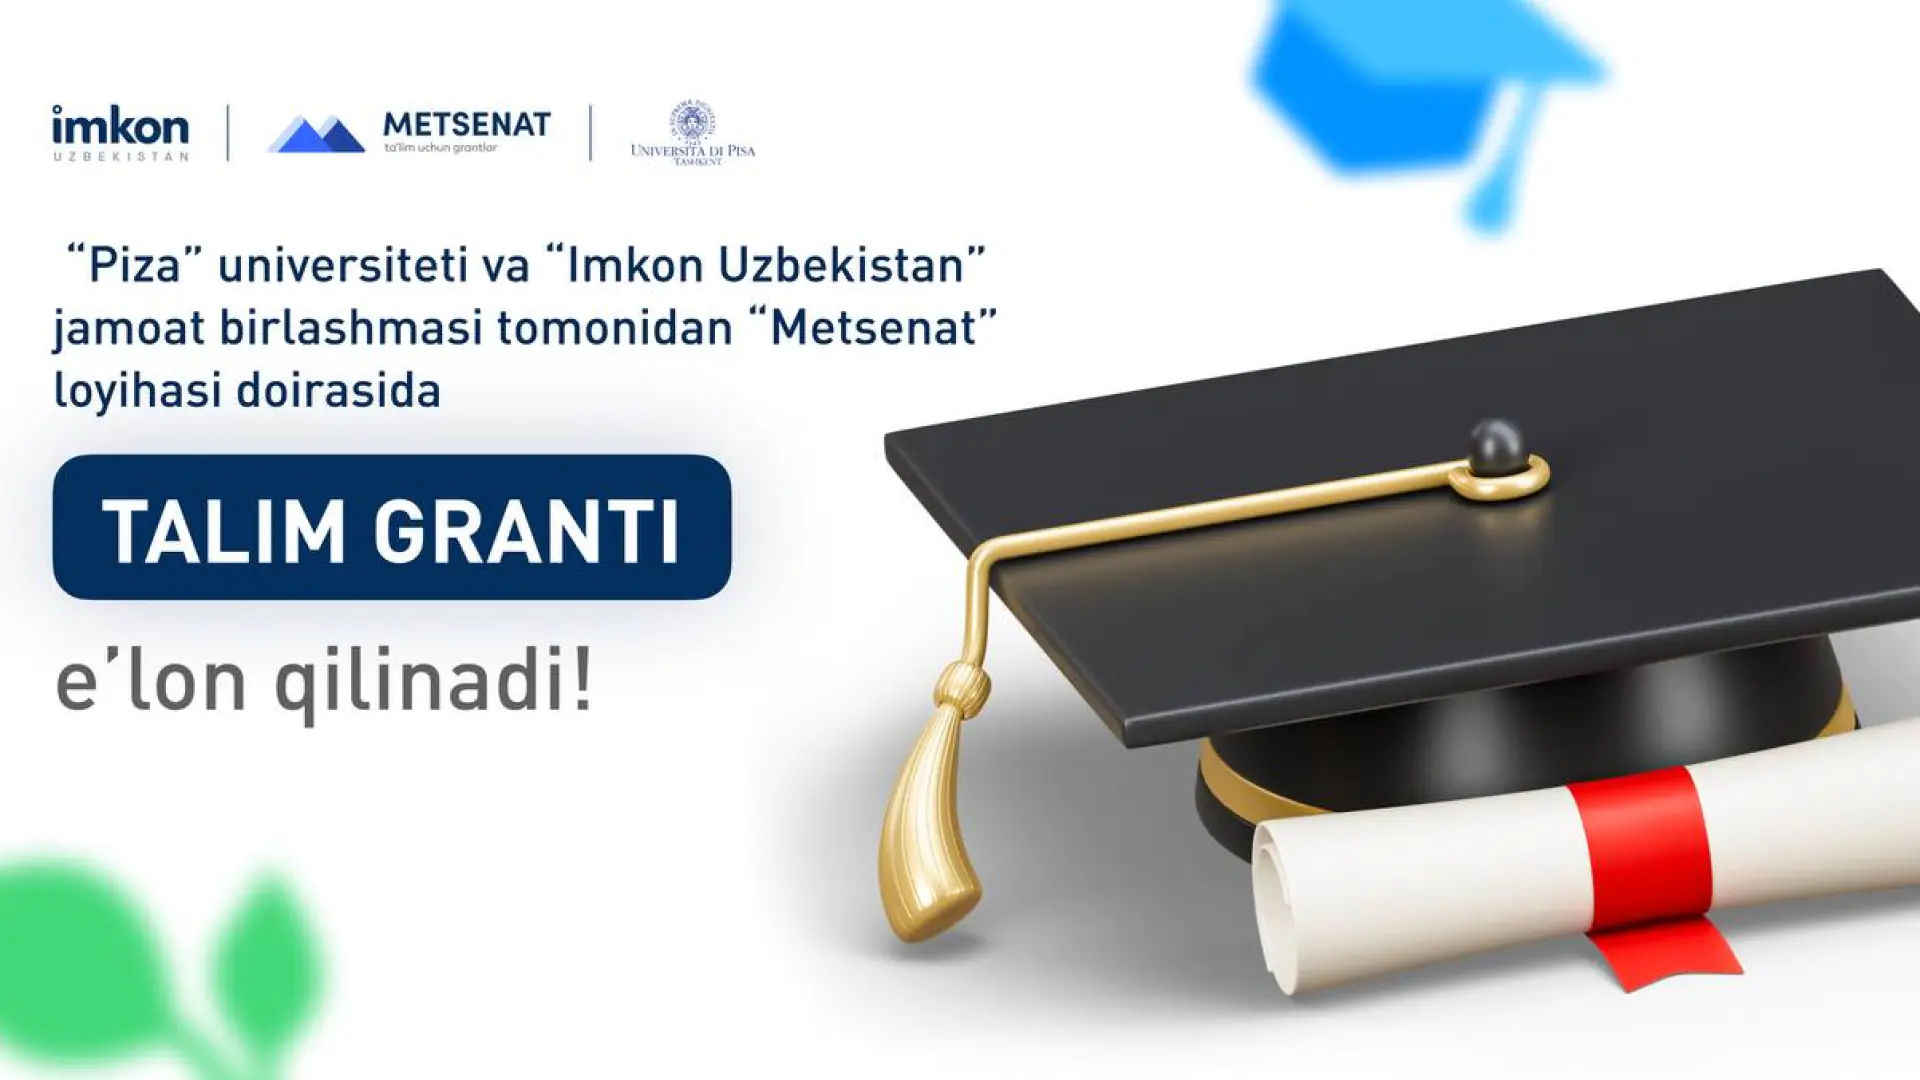 Toshkentdagi Piza universiteti filiali va “Imkon Uzbekistan” jamoat birlashmasidan taʼlim granti. Umumiy grant miqdori — 281,2 mln soʻm!